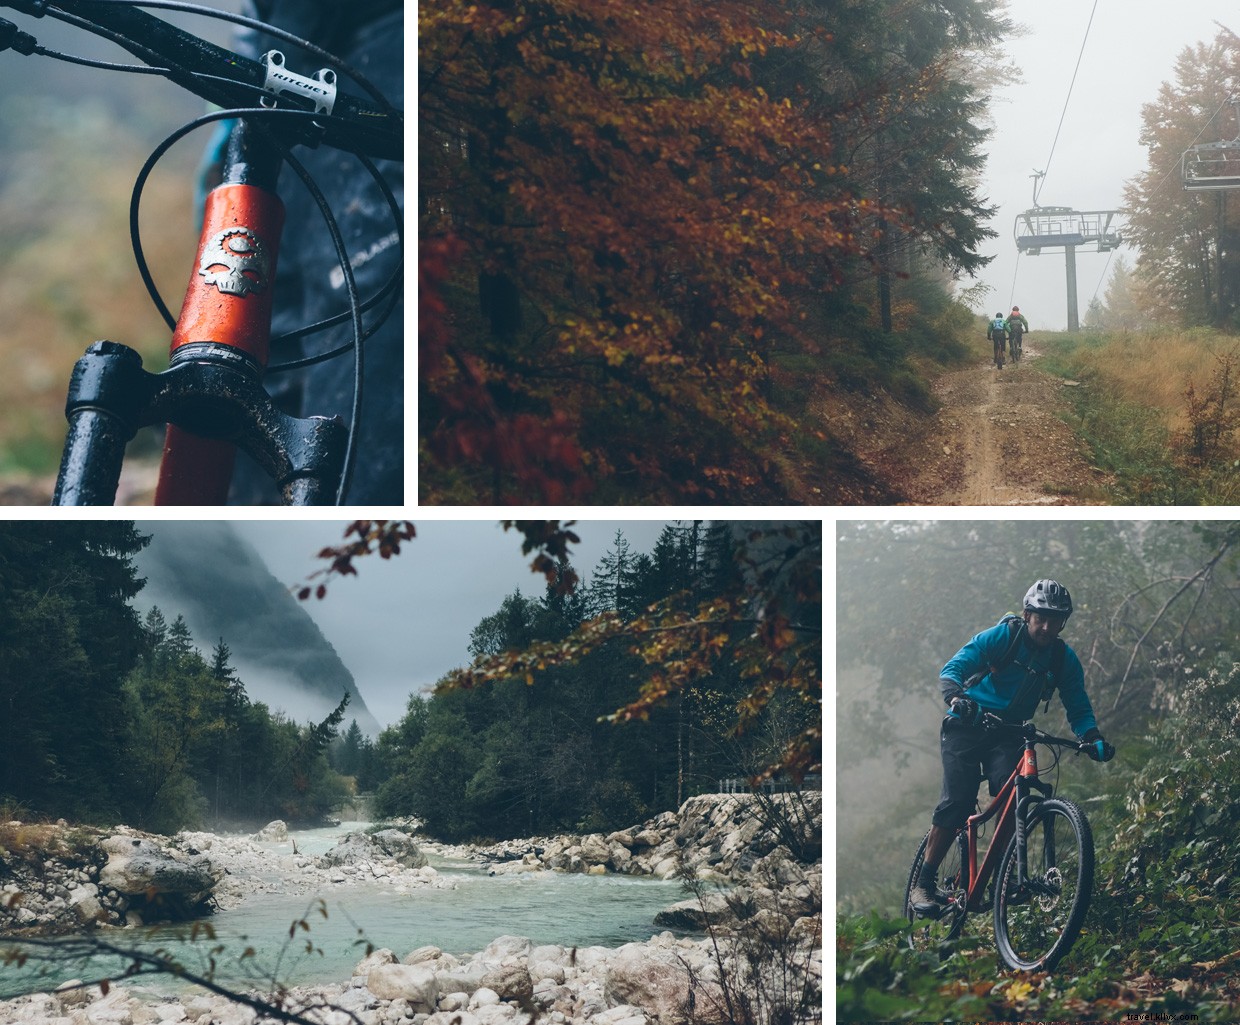 Uma aventura de mountain bike:Eslovênia 